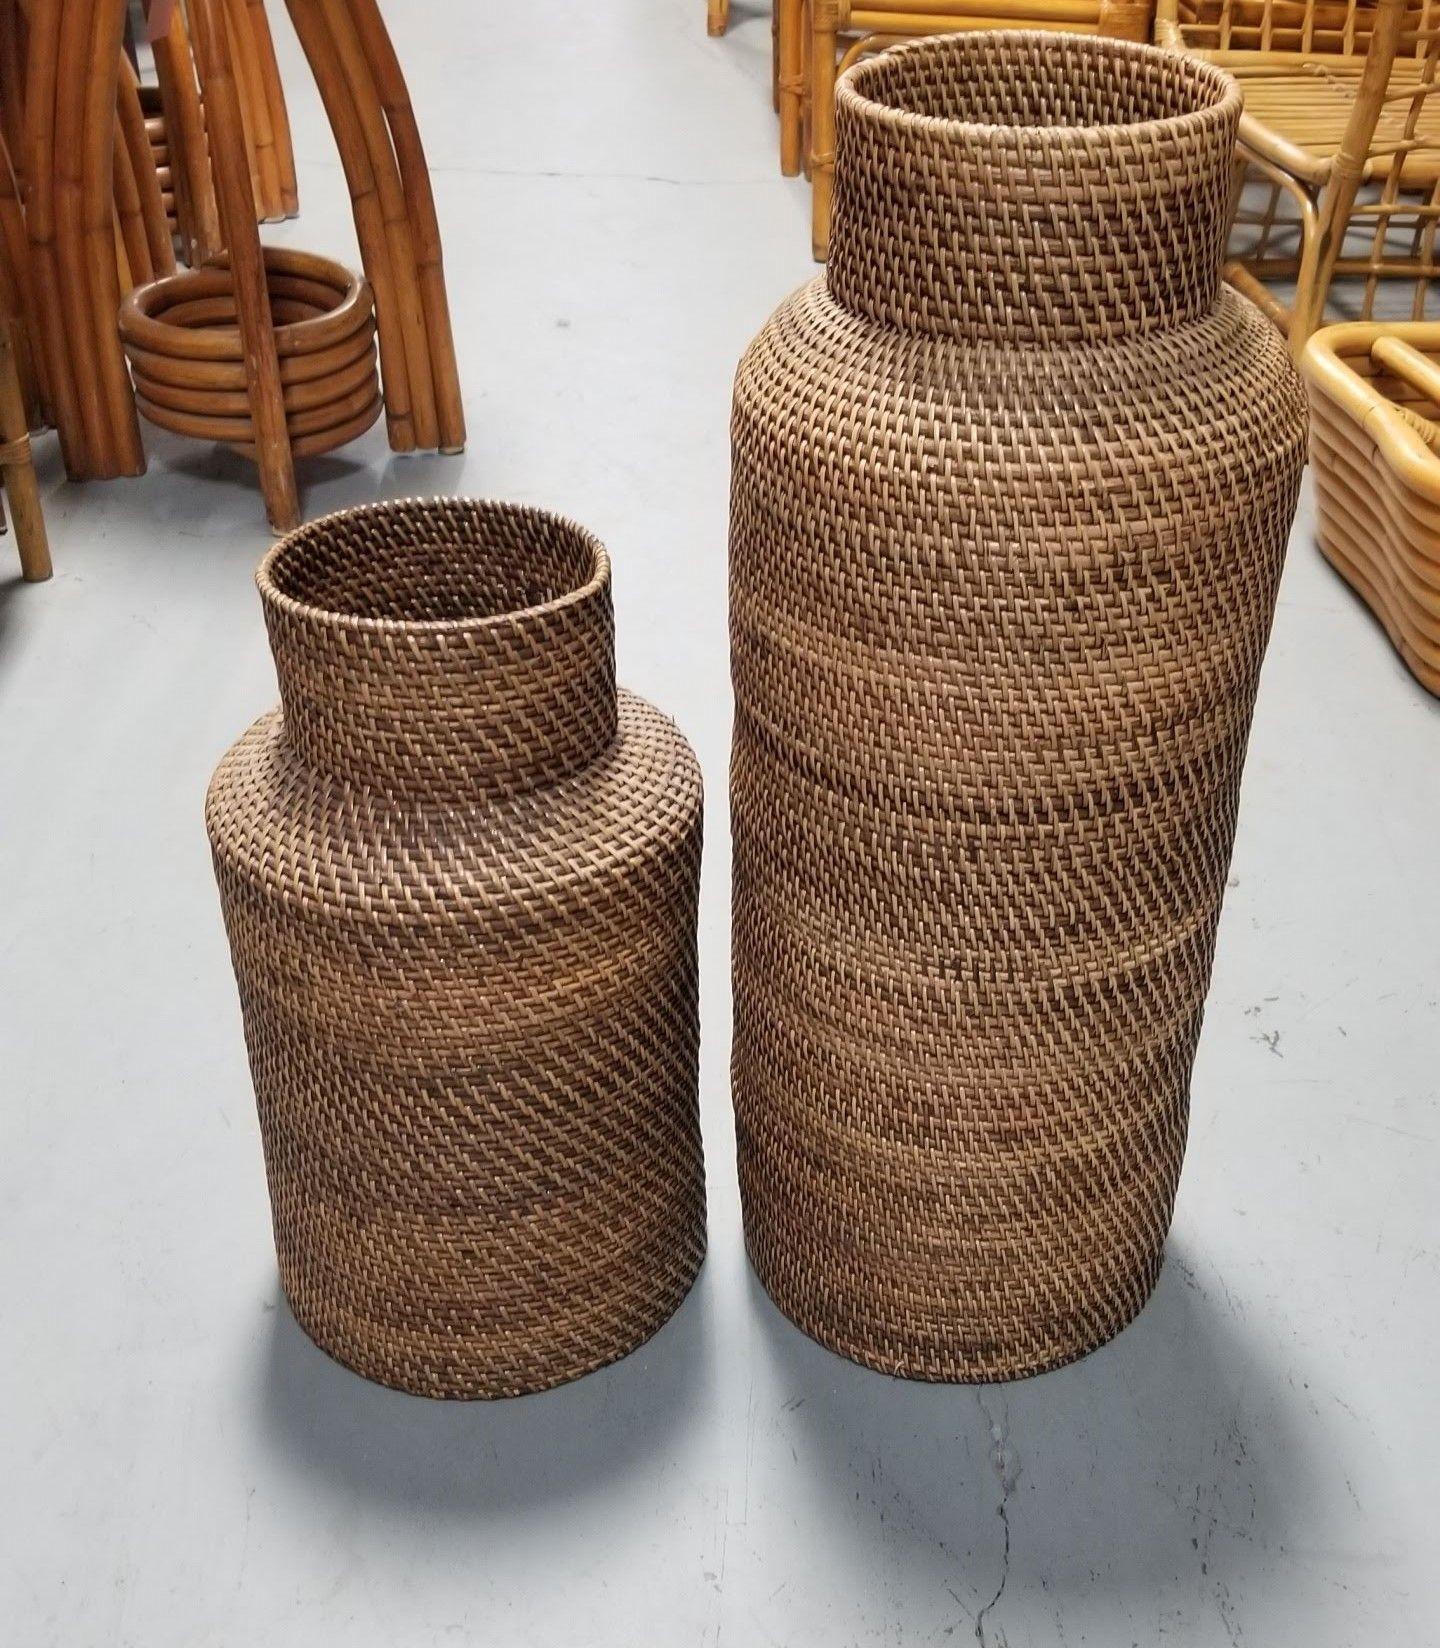 Zwei dekorative Bodenvasen im Stil von Gabriella Crespi aus gestapelten Schilfrohr-Rattanringen mit Korbgeflecht. Perfekt für Trockenpflanzenarrangements oder als Einzelstück.

Abmessungen:

Kleinere Vase: 19,5